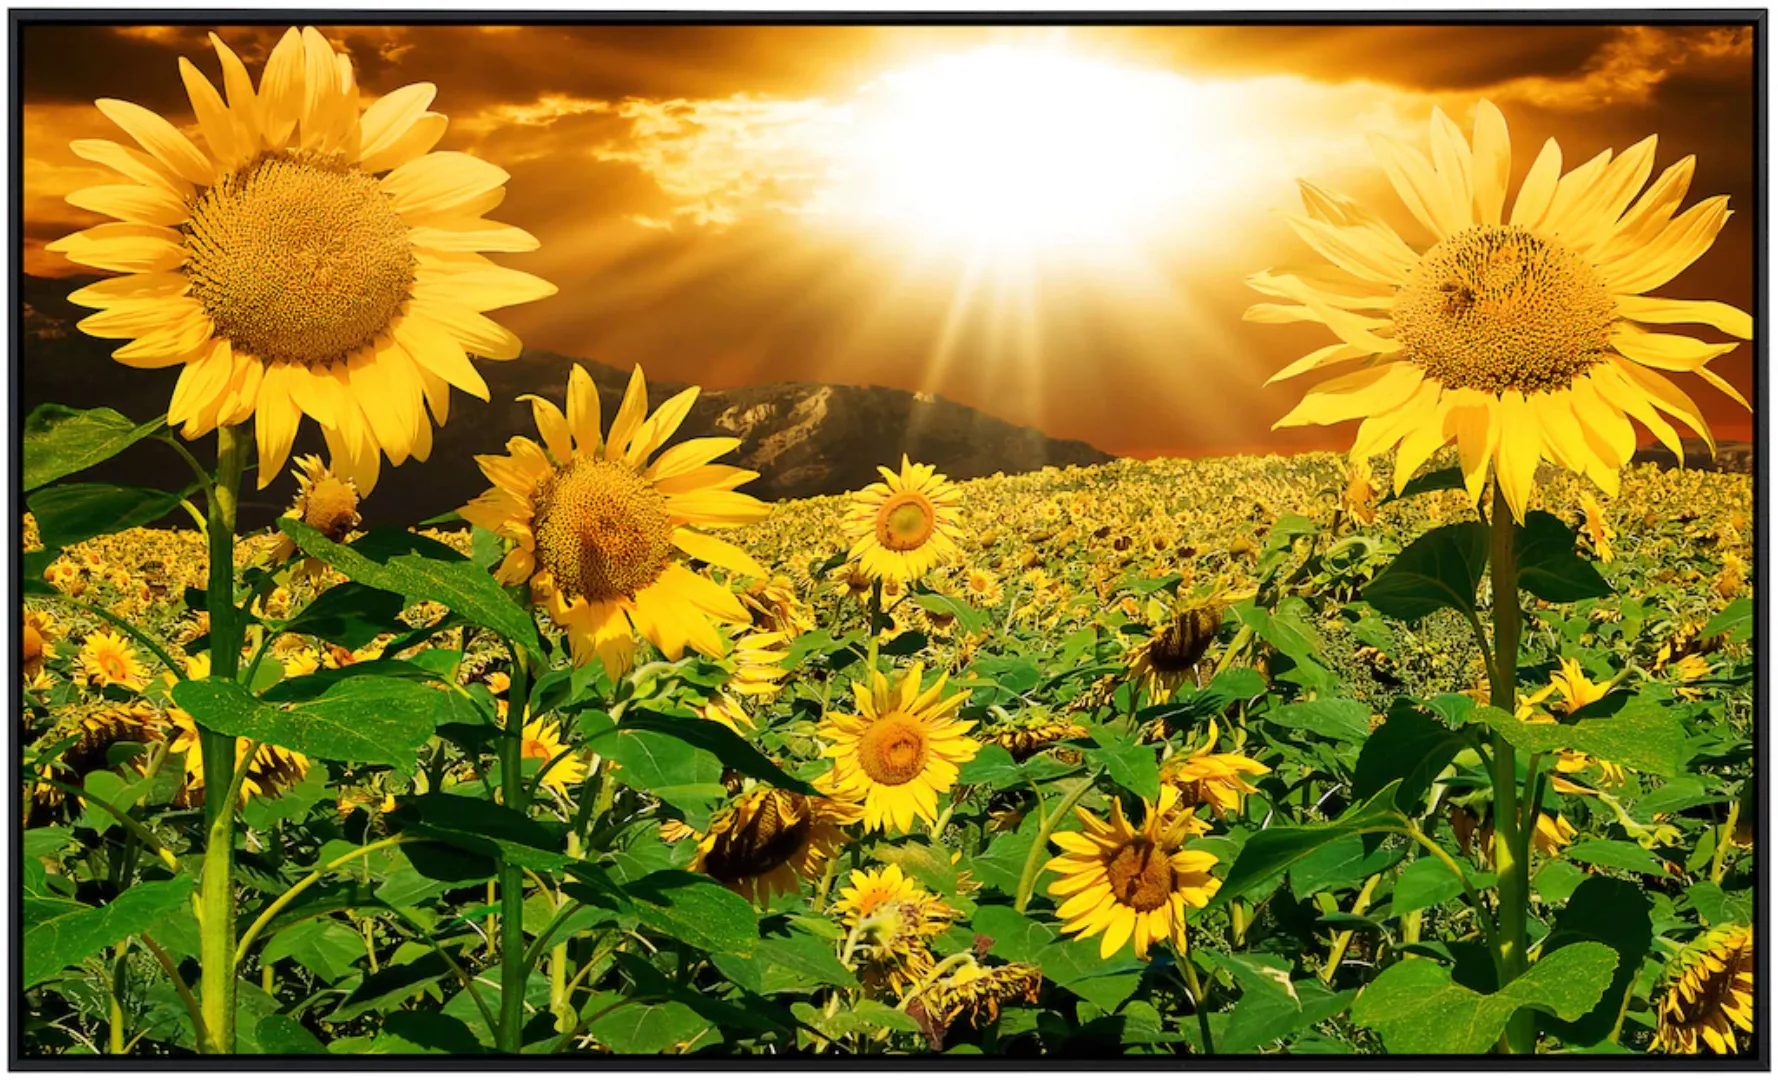 Papermoon Infrarotheizung »Sonnenblumen«, sehr angenehme Strahlungswärme günstig online kaufen